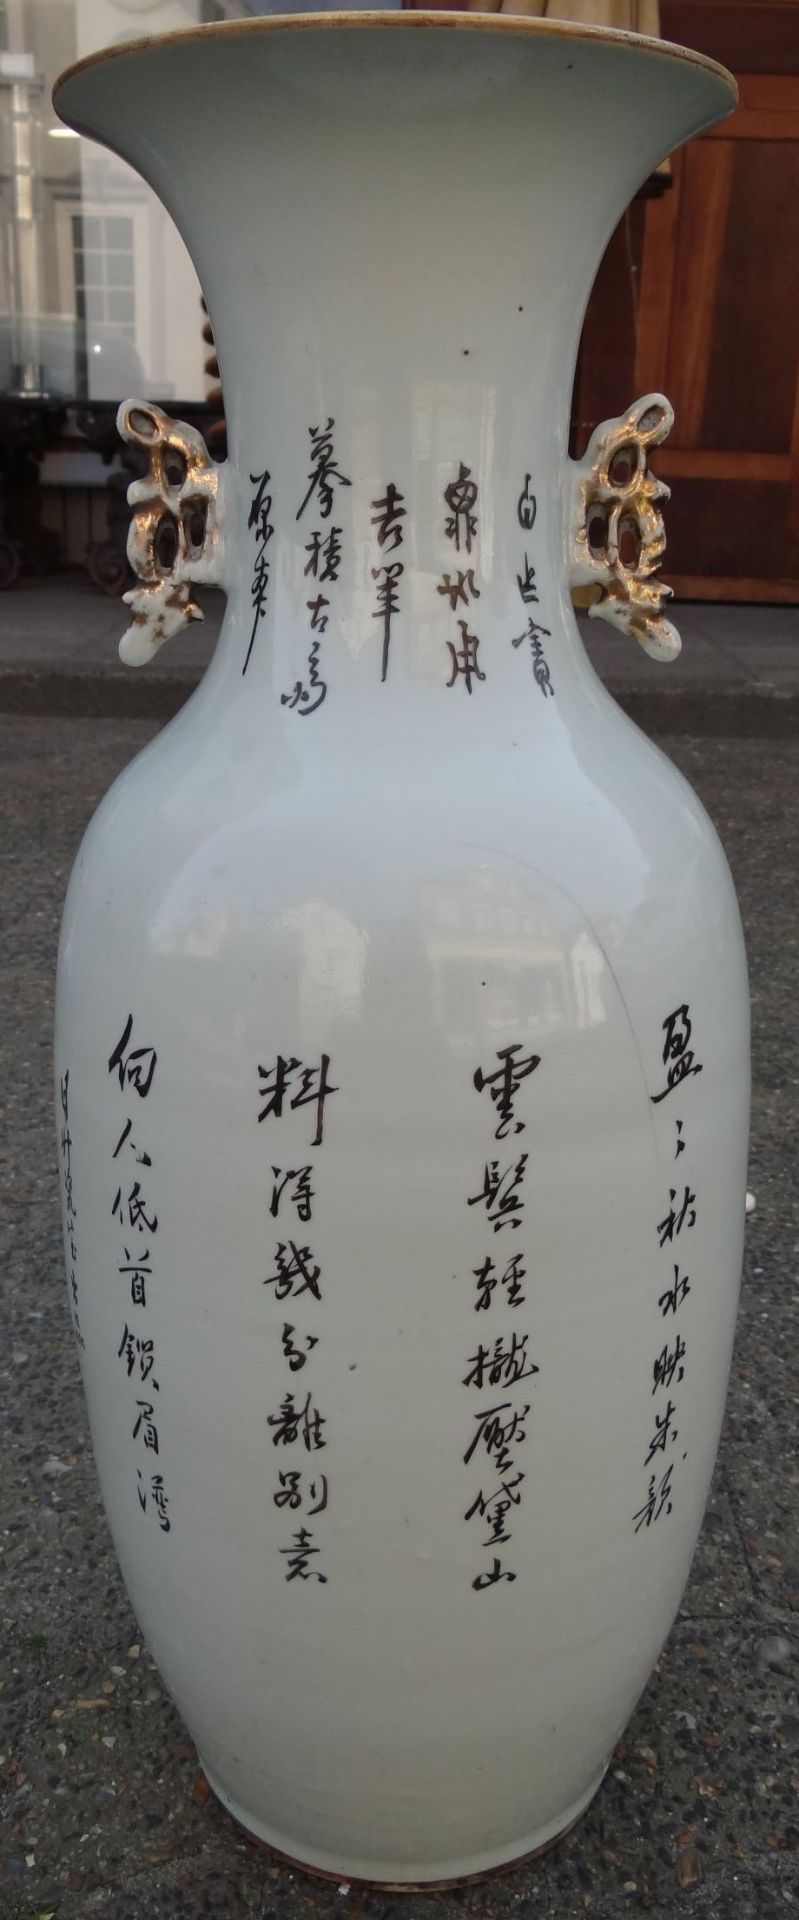 *hohe China-Vase mit figürlicher Malerei, älter, H-59 cm, D-19 cm, ein langer Spannungsri - Bild 5 aus 9